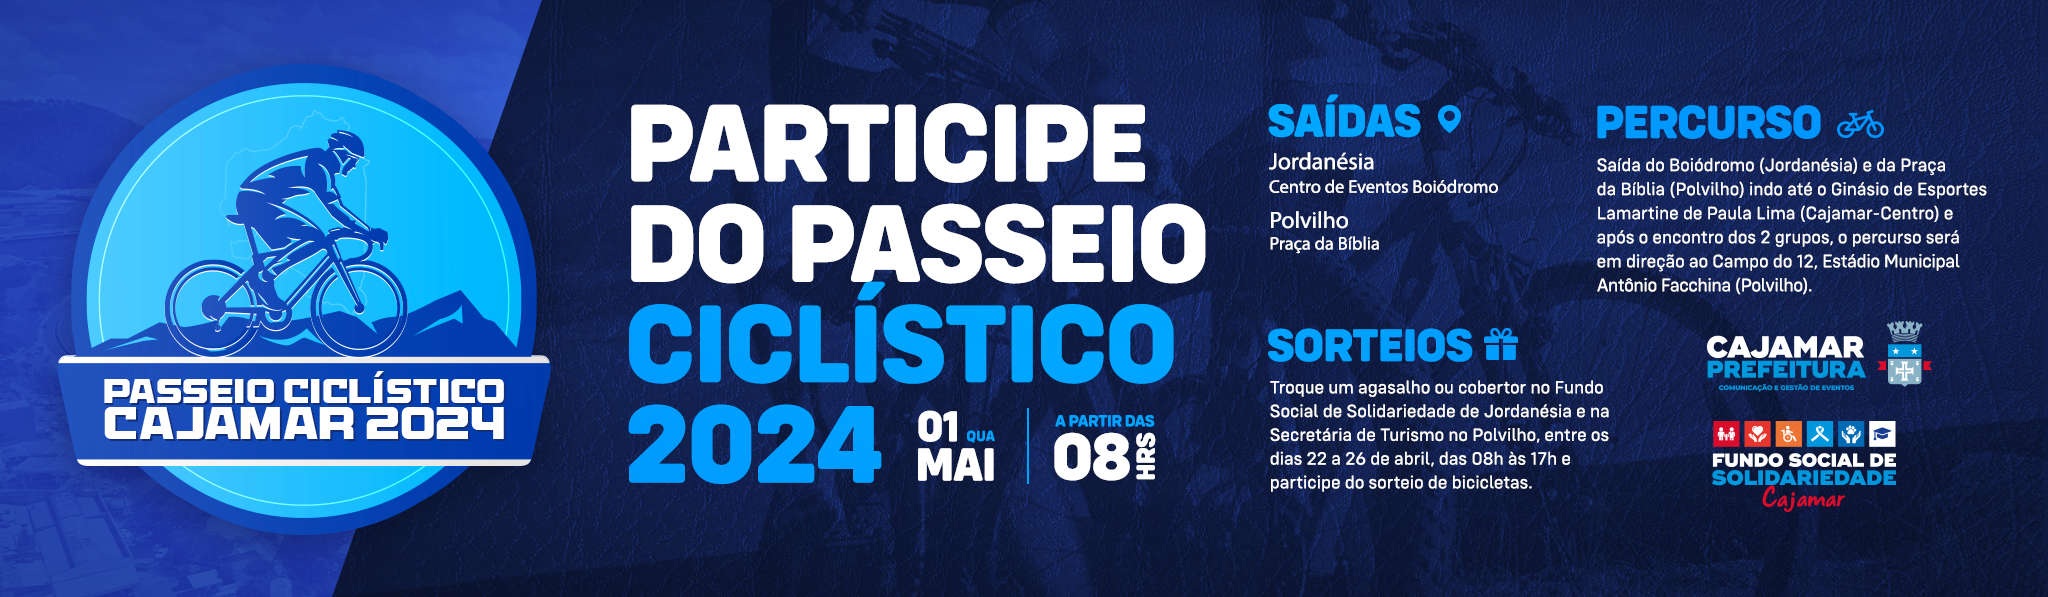 Passeio Ciclístico Cajamar 2024 acontece no dia 1º de maio